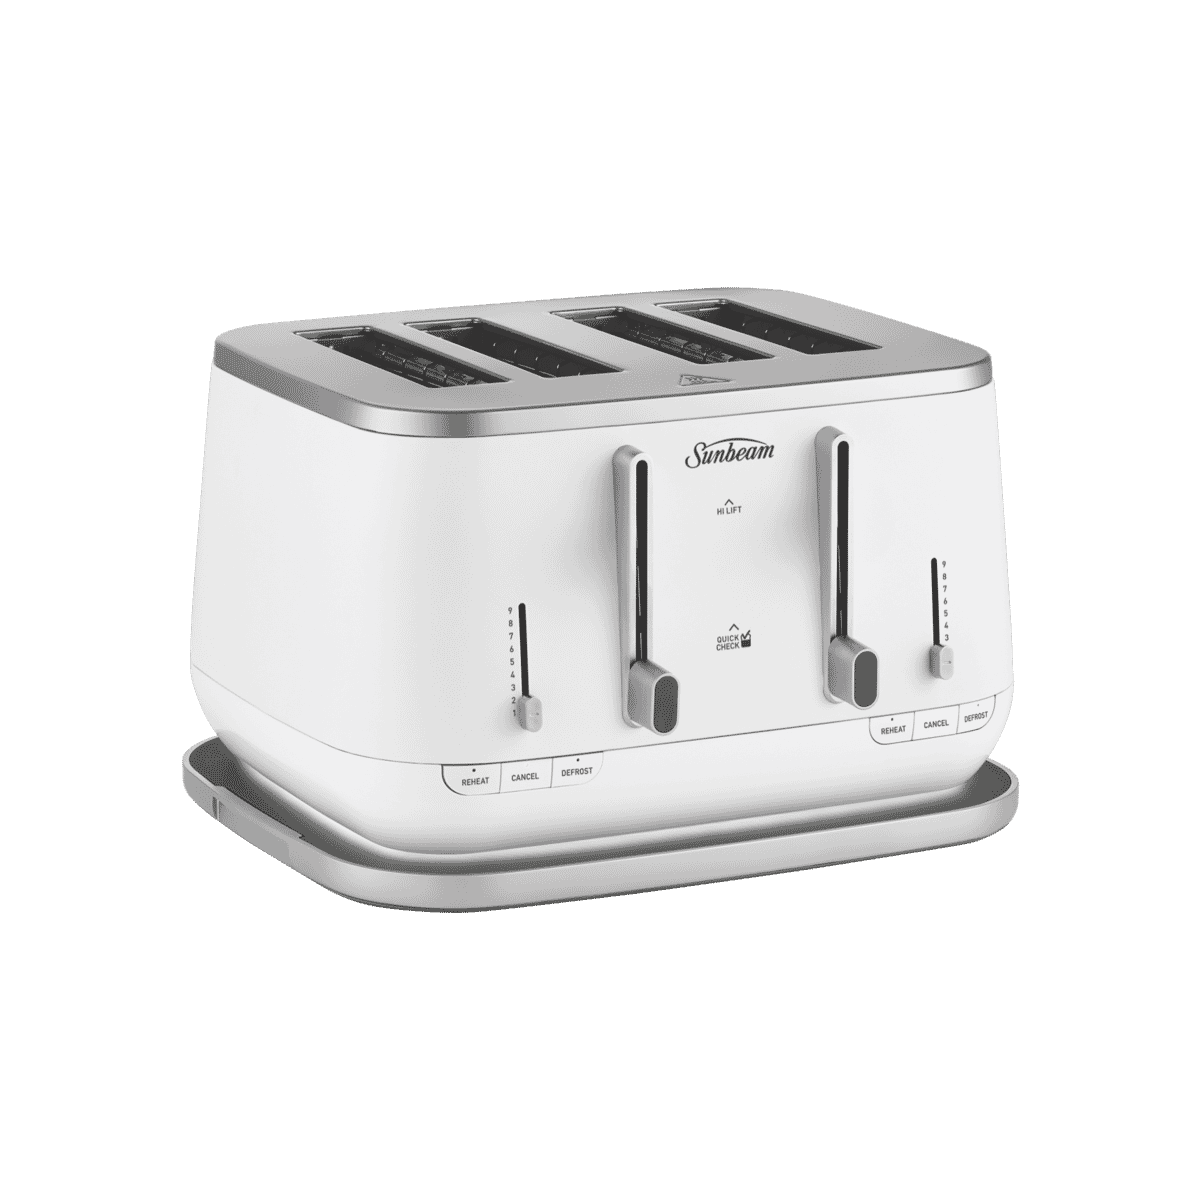 Delonghi Icona Capital 4 Slice Toaster - Sydney White